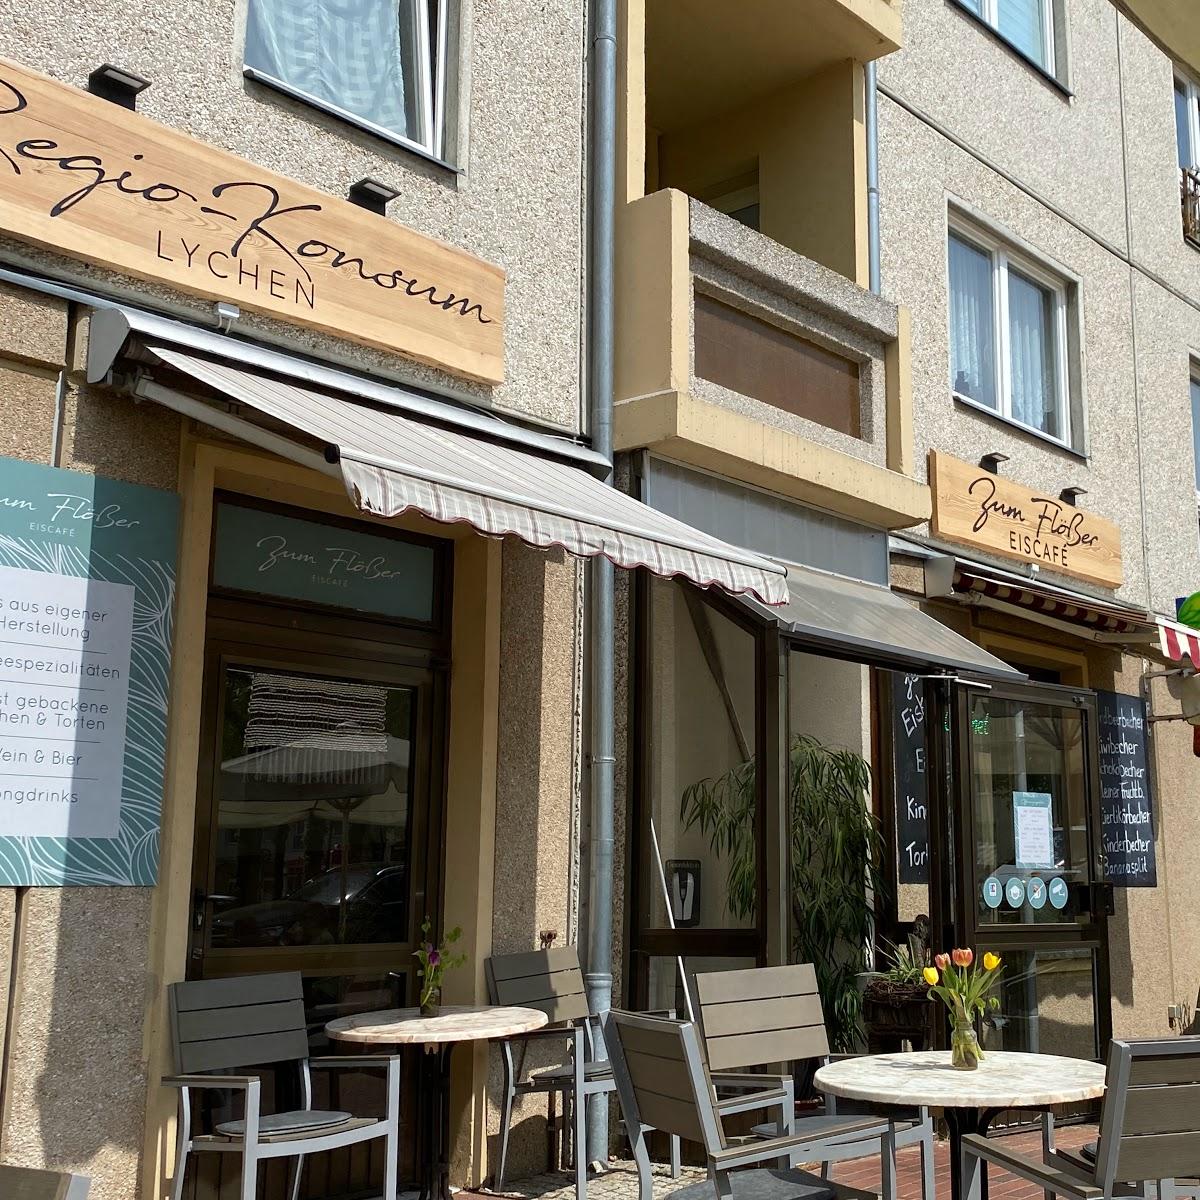 Restaurant "Eiscafé Zum Flößer" in Lychen